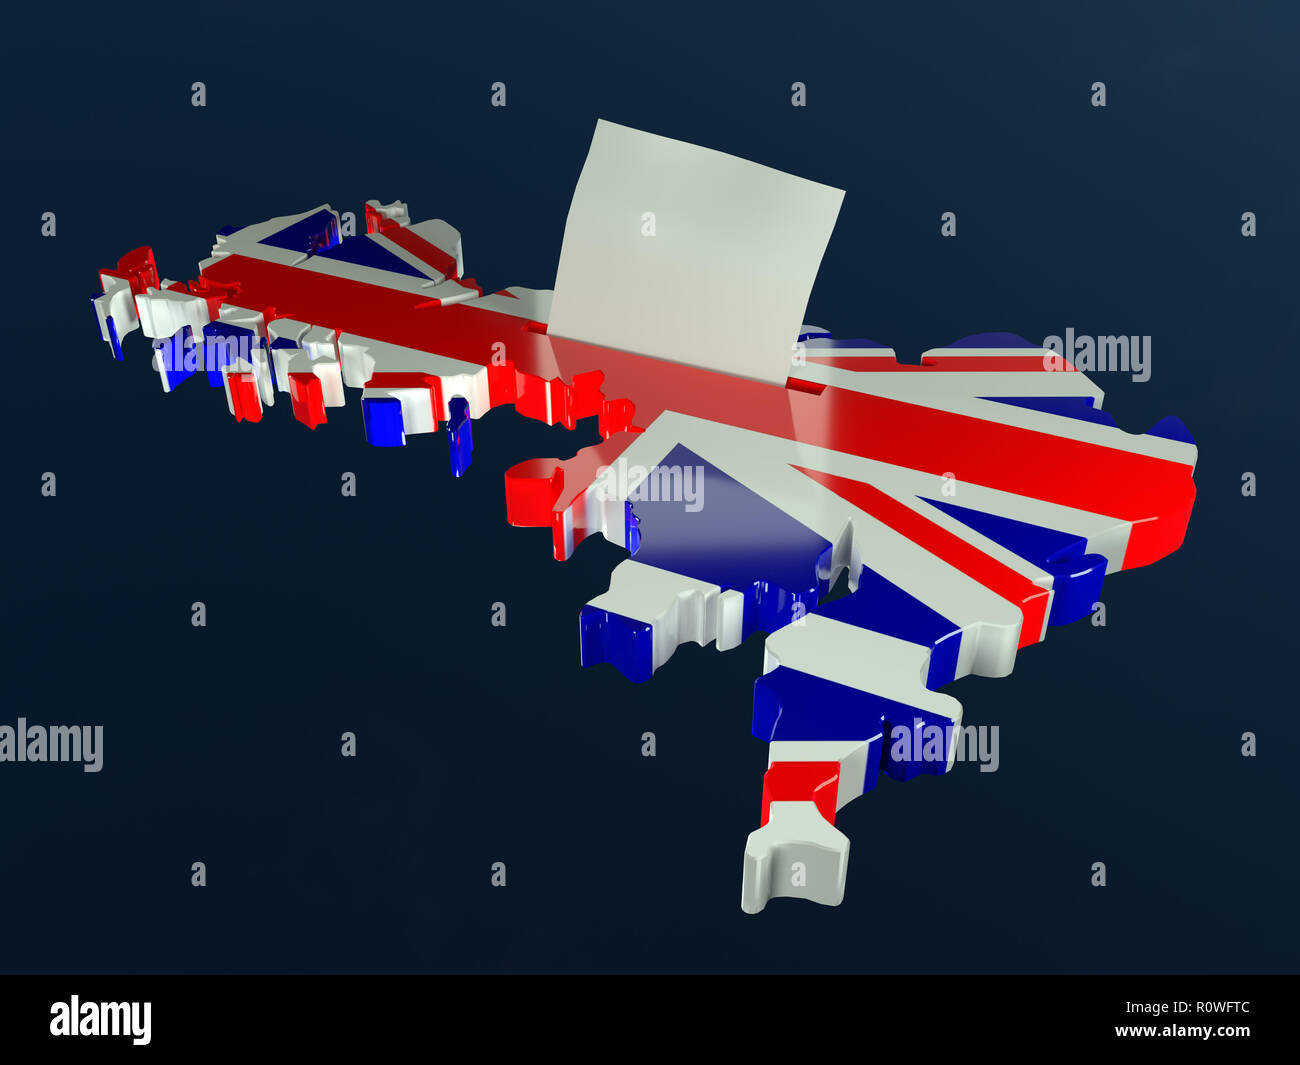 3D-Render von Urnen in Form von Großbritannien Umriss mit Nationalflagge und Stimmkarte Hälfte überlagert - eingefügt in die Wahlurne Steckplatz Stockfoto